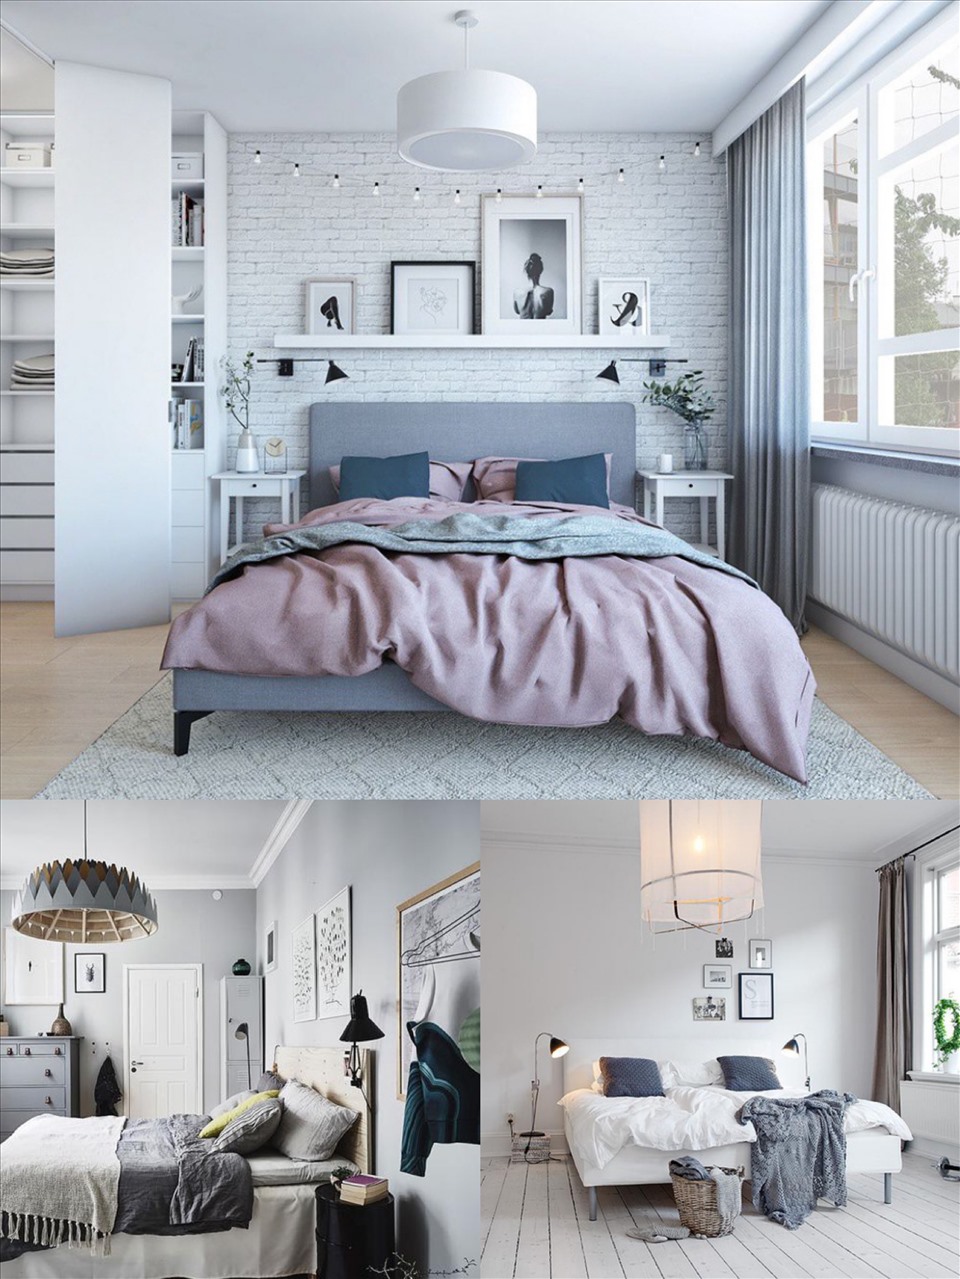 Màu trắng là màu chủ đạo của phòng ngủ phong cách Bắc Âu tuy nhiên gia chủ có thể kết hợp các màu đen, nâu gỗ, xám nhẹ, xanh ngọc,... tạo điểm nhấn cho căn phòng.